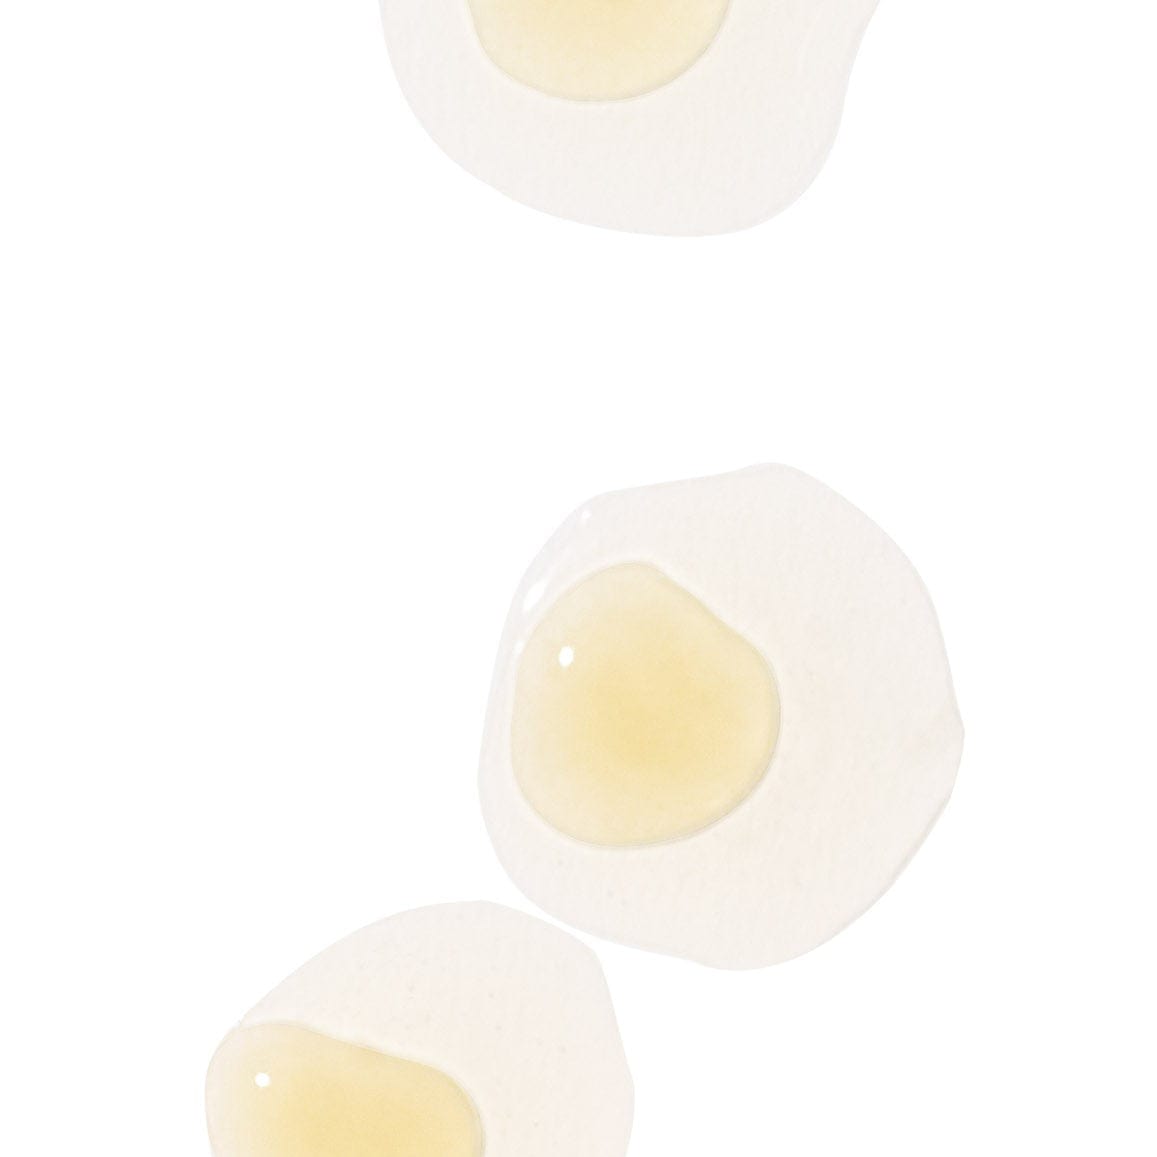 Drei runde weiße Flecken mit einer transparenten Gelmitte auf weißem Hintergrund.